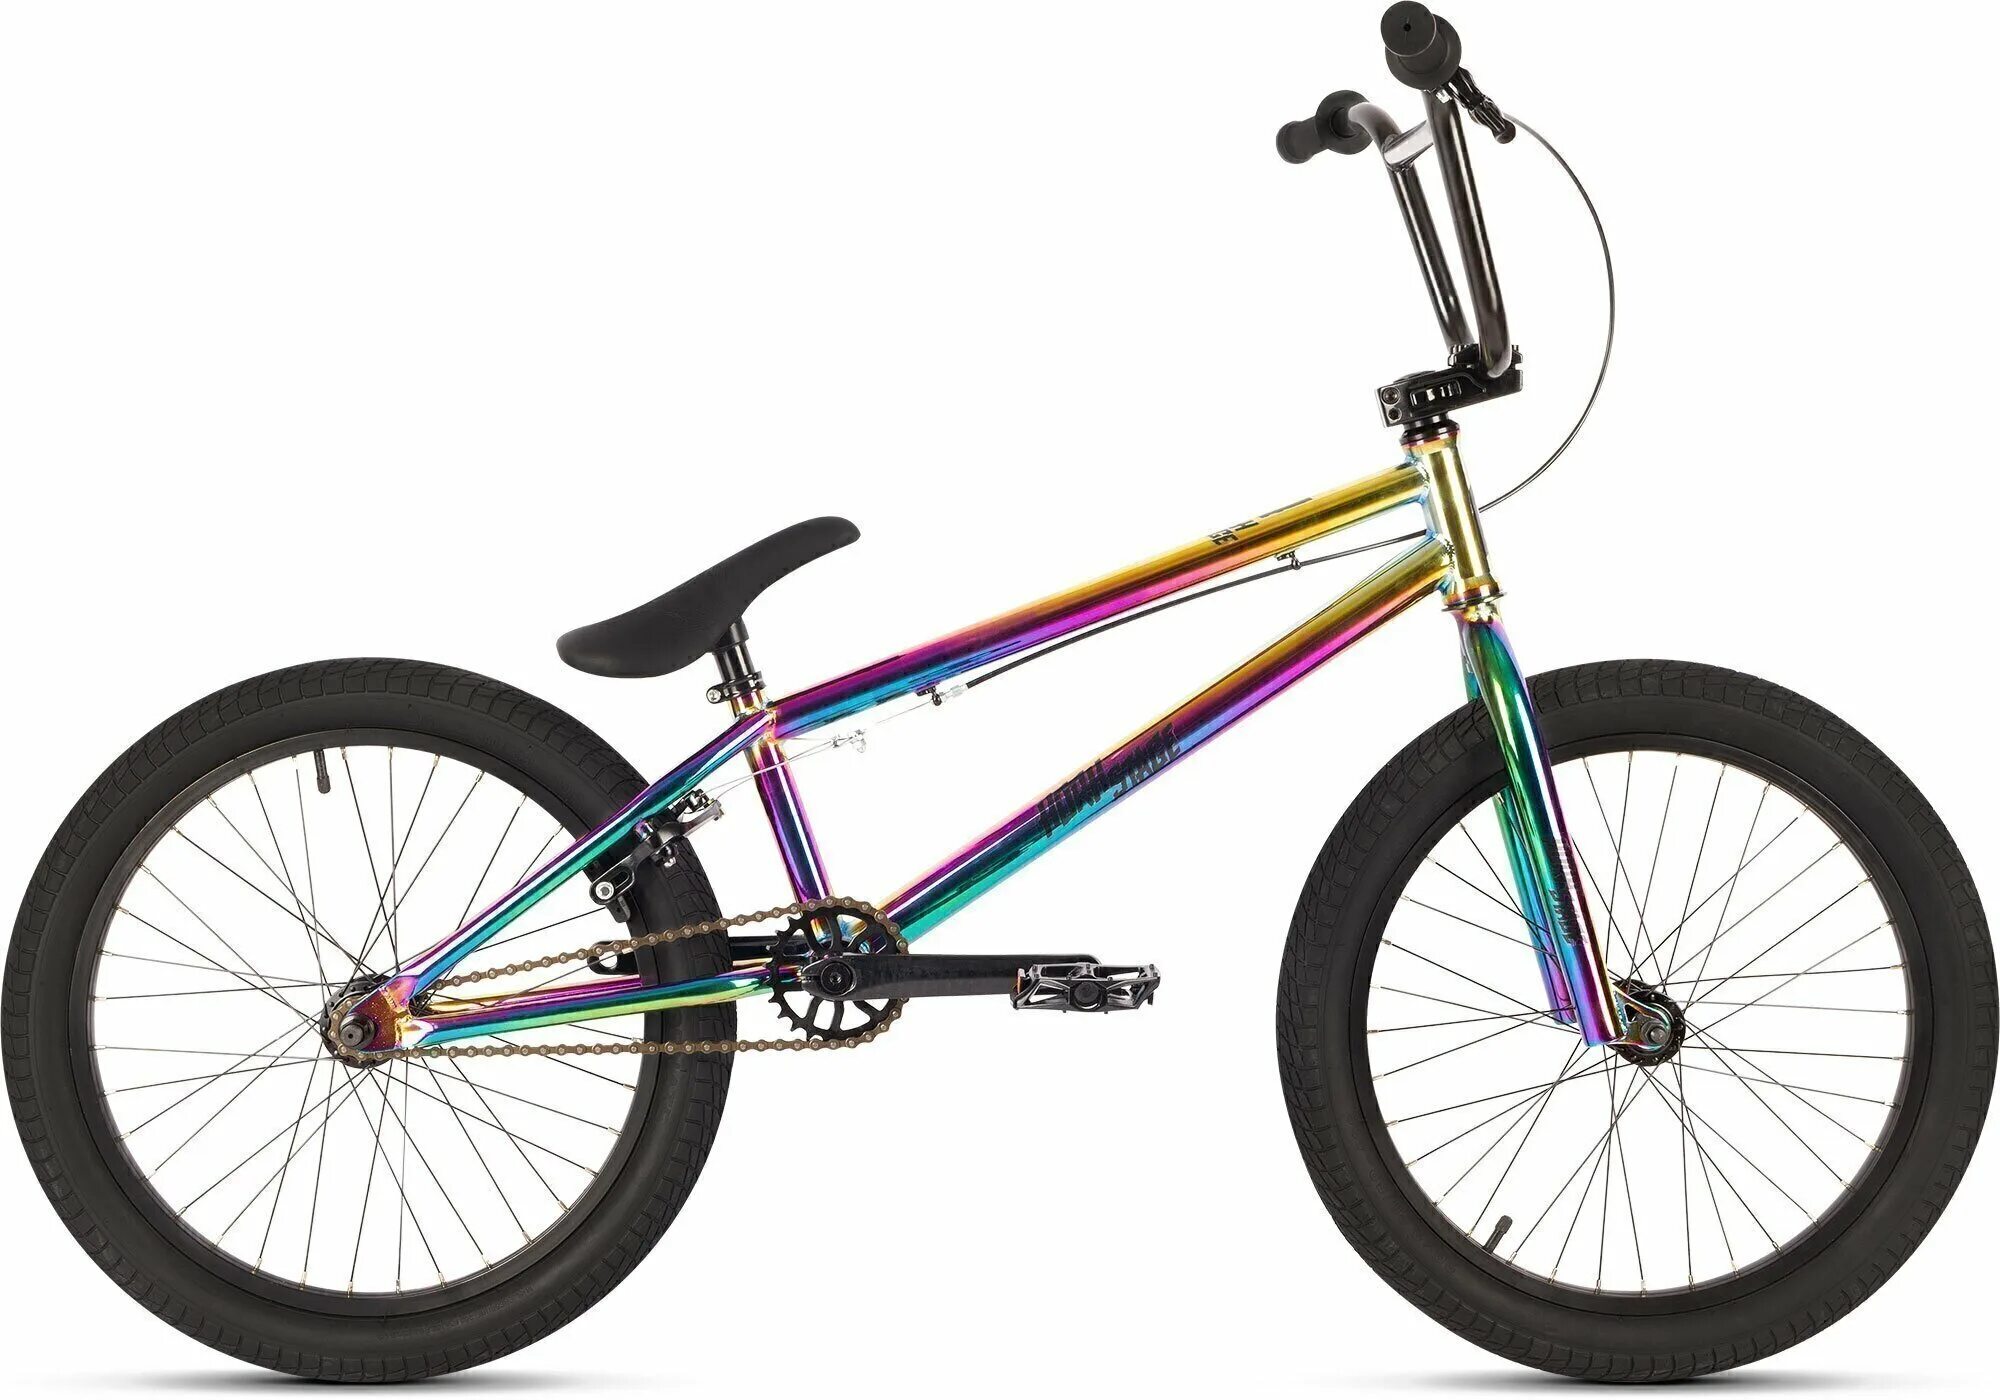 Велосипед horh Stage 20" (2020) бензин. Horh Stage бмх велосипед. BMX велосипед 20-200-29, 20, 2020. Трюковой велосипед BMX градиент. Трюковые велосипеды купить недорого